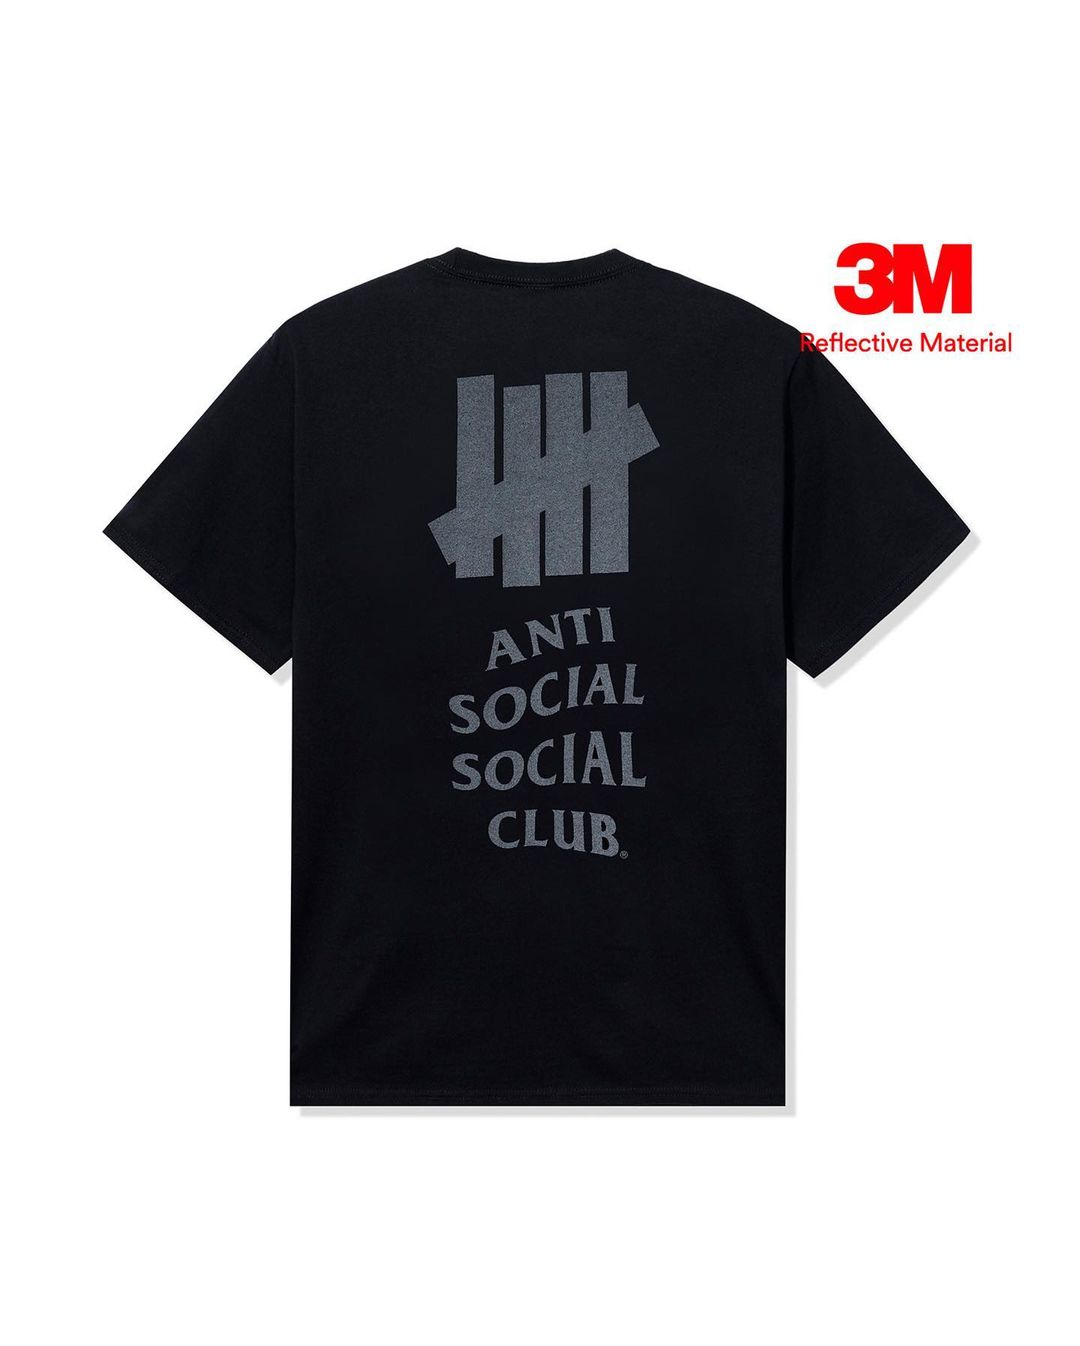 Anti Social Social Club × UNDEFEATED 最新コラボが10/21 発売予定 (アンチ ソーシャル ソーシャル クラブ アンディフィーテッド)